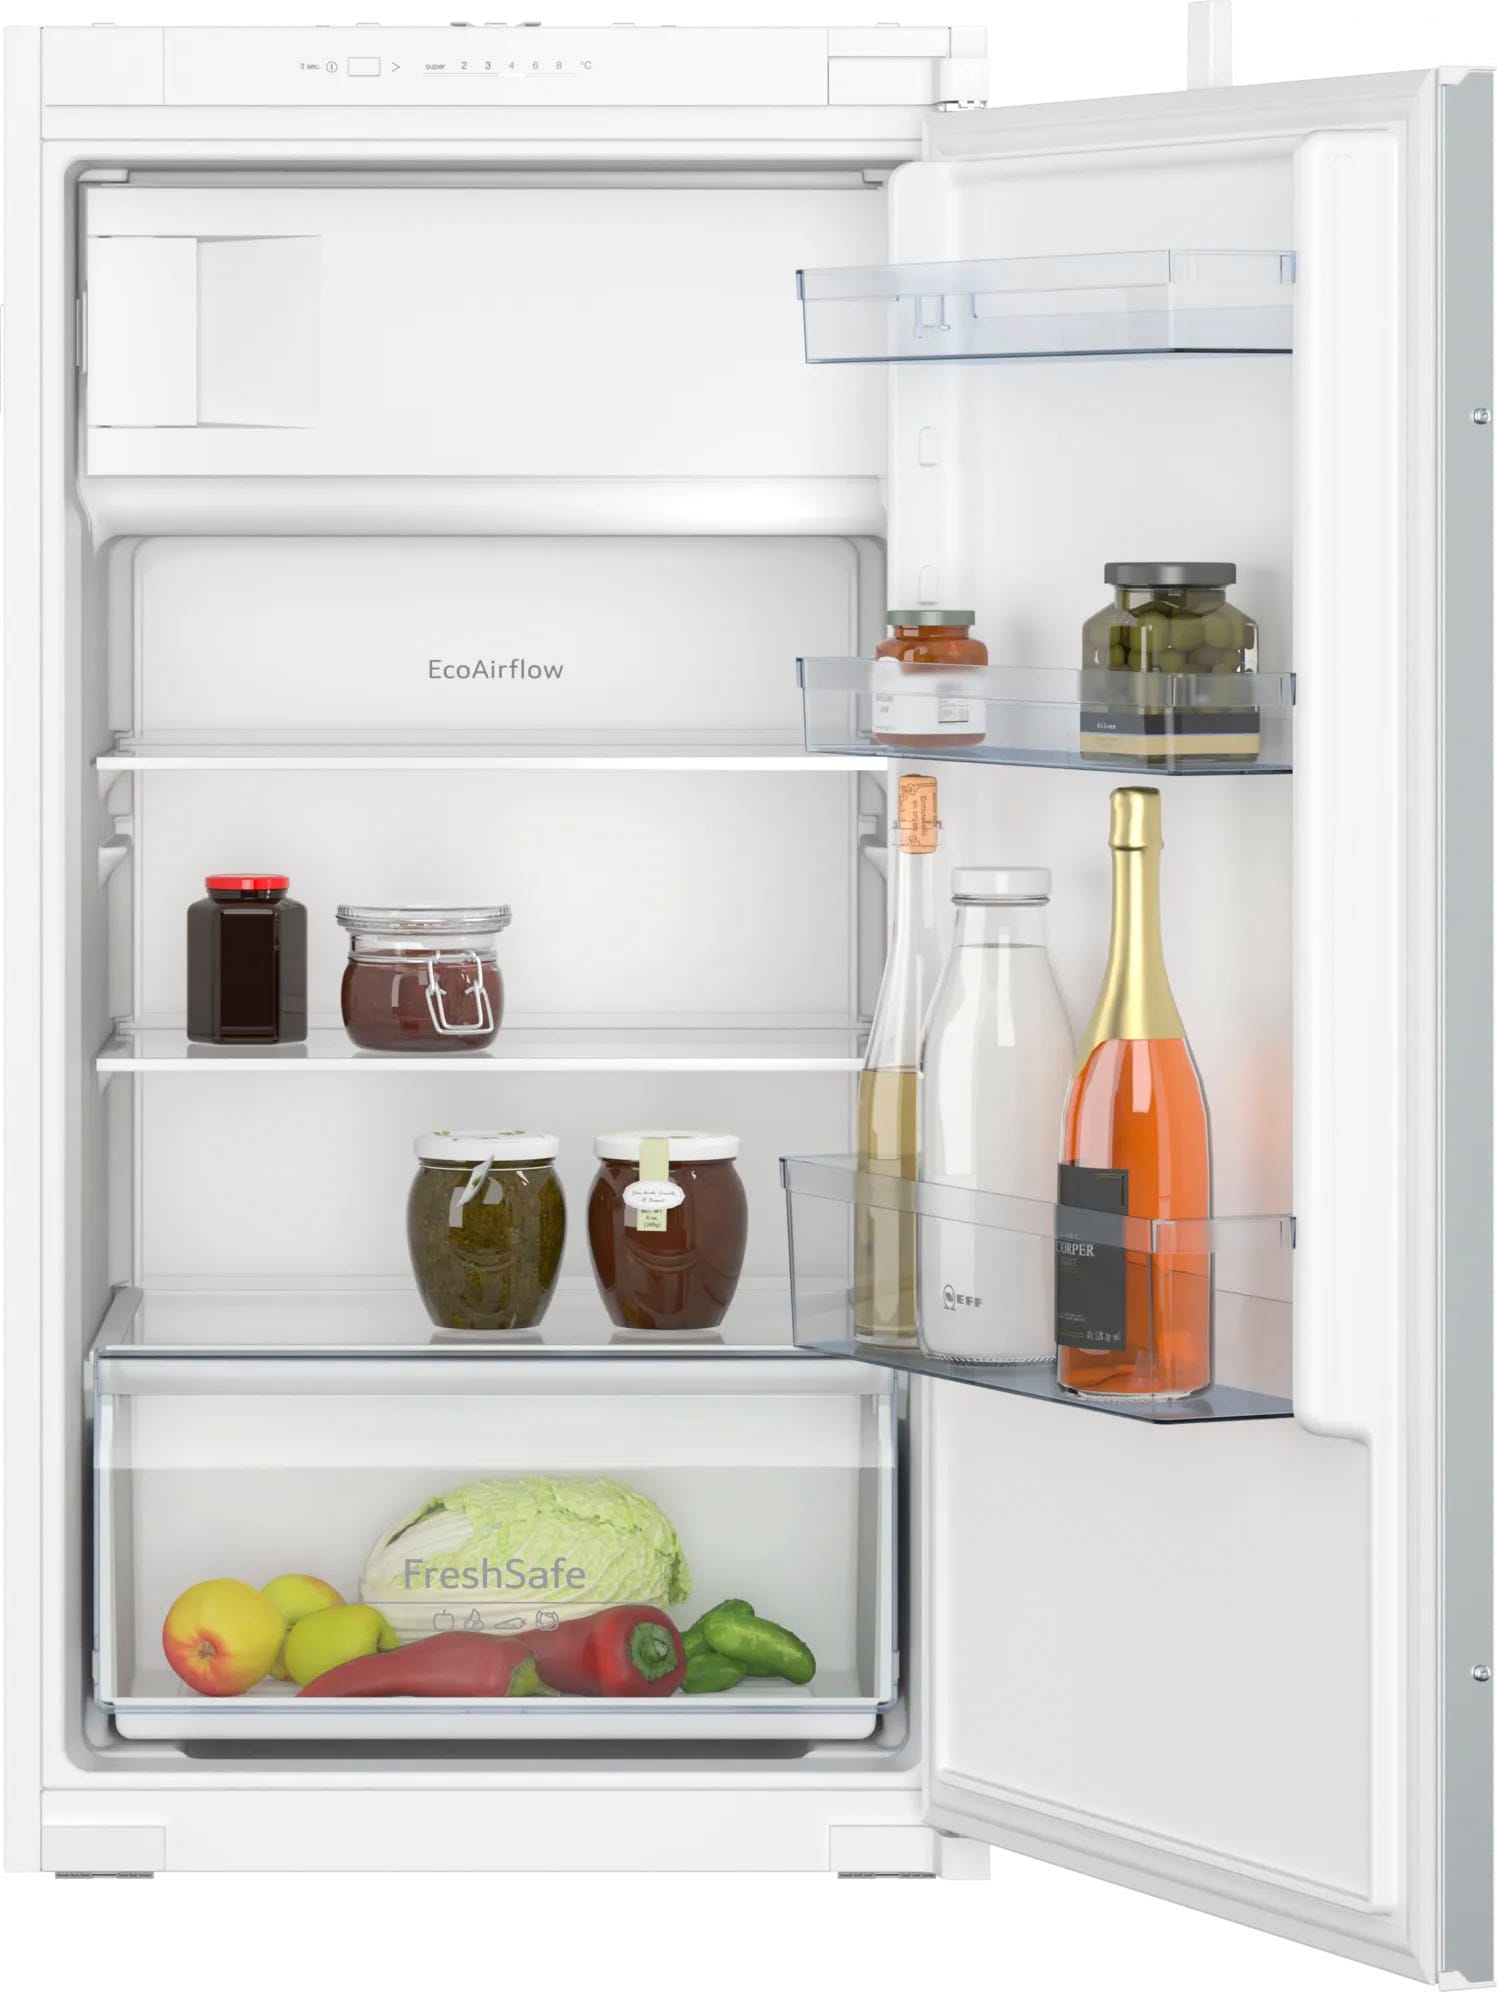 Teilzahlung mit NEFF OTTO flexibler bei Kühlschränke